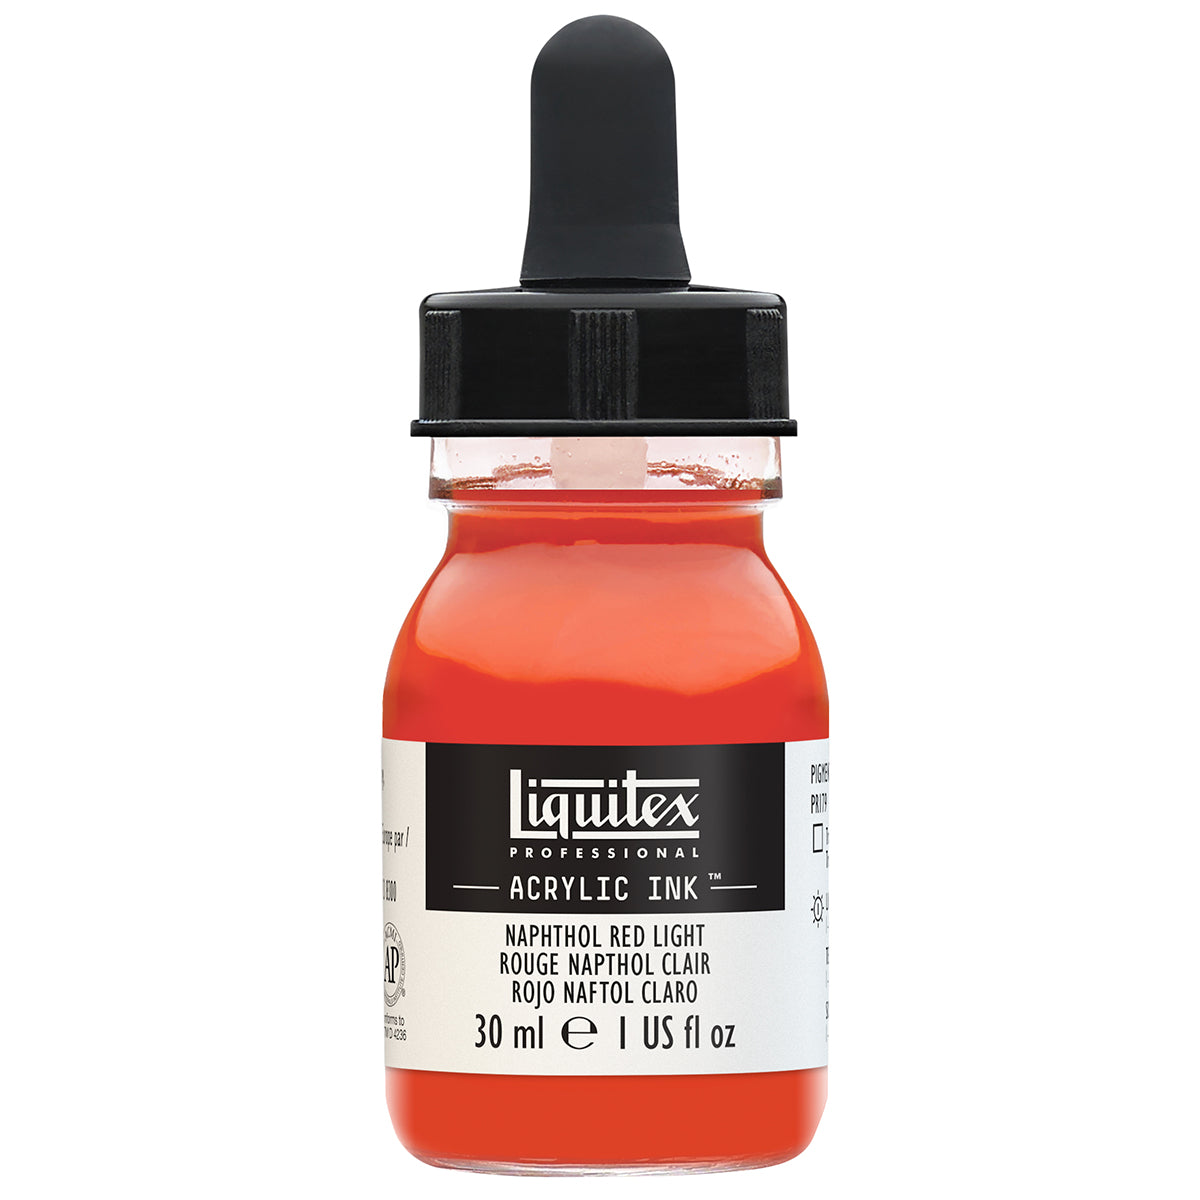 Liquitex-inchiostro acrilico-30ml naftolo luce rossa